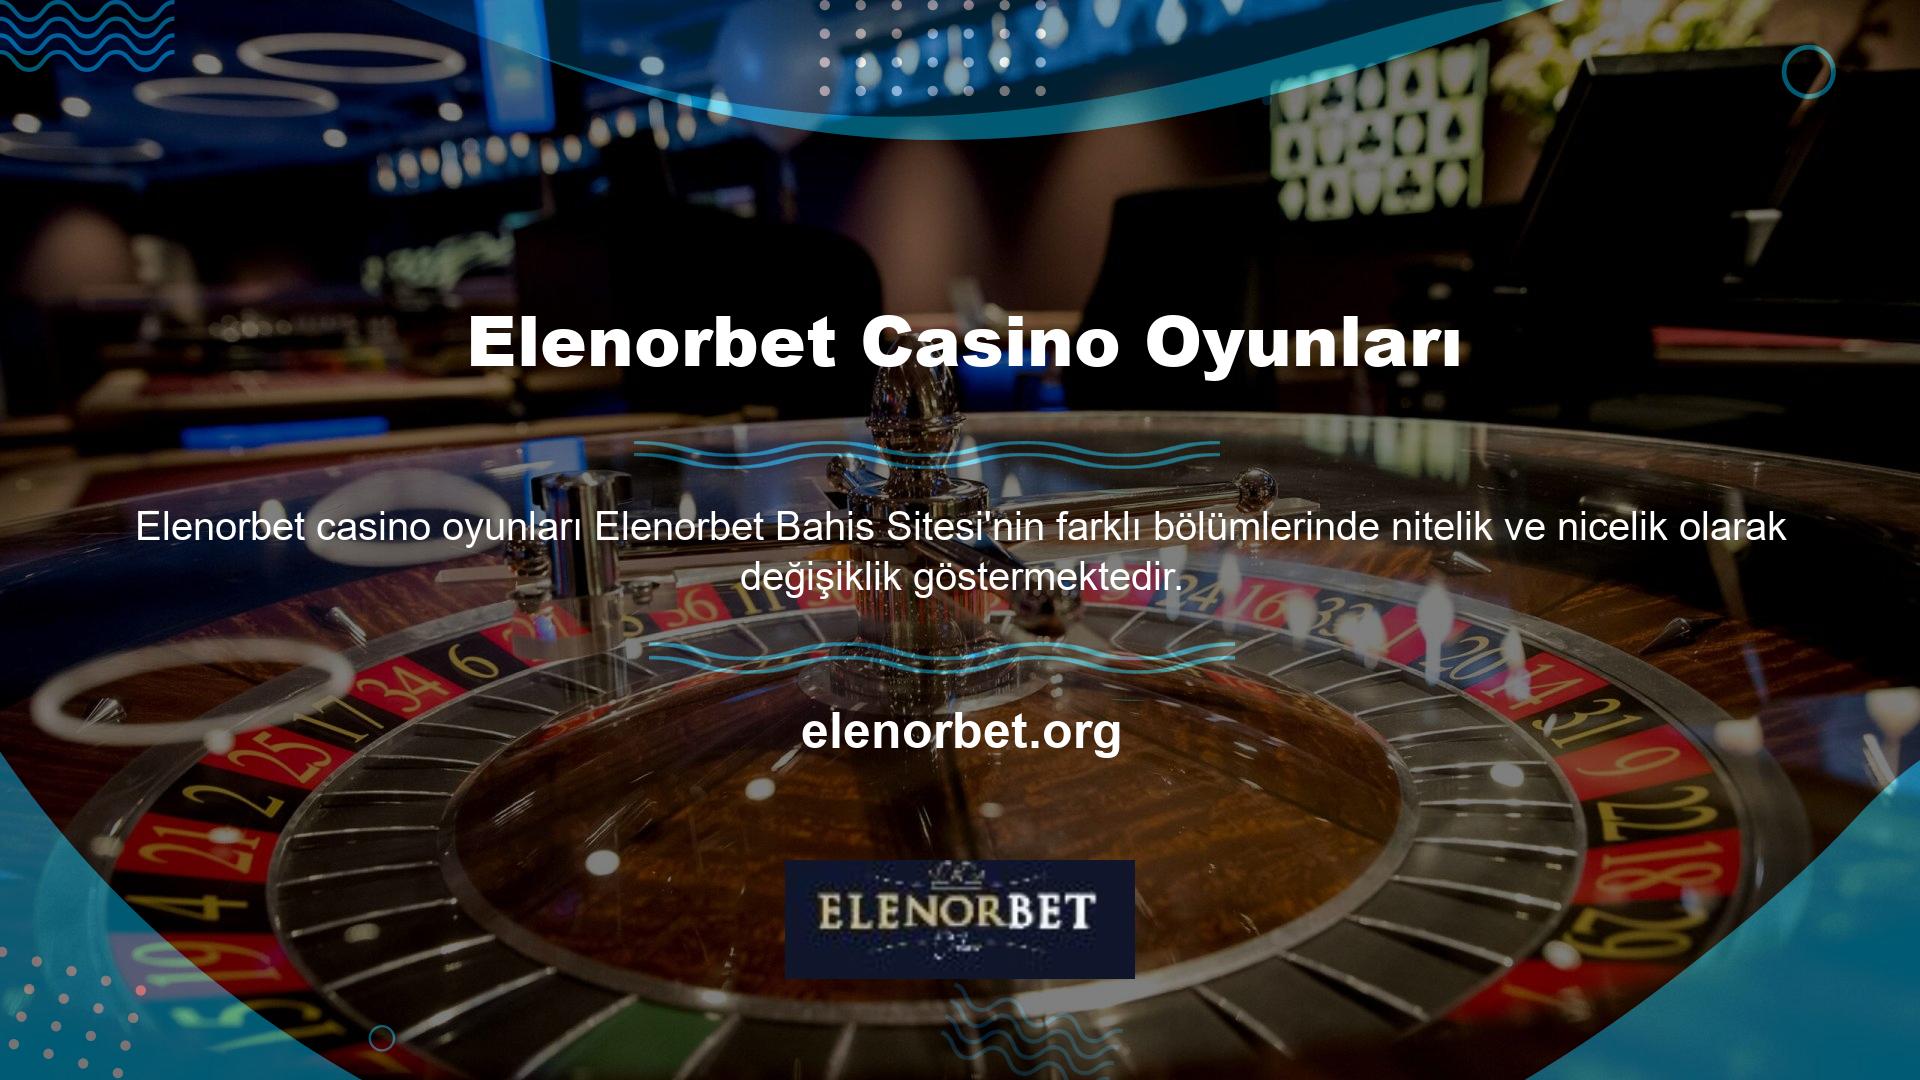 Ülkemizde Elenorbet hizmetleri sunan birçok Elenorbet oyuncusu, casino oyunlarının kalitesine büyük önem vermektedir